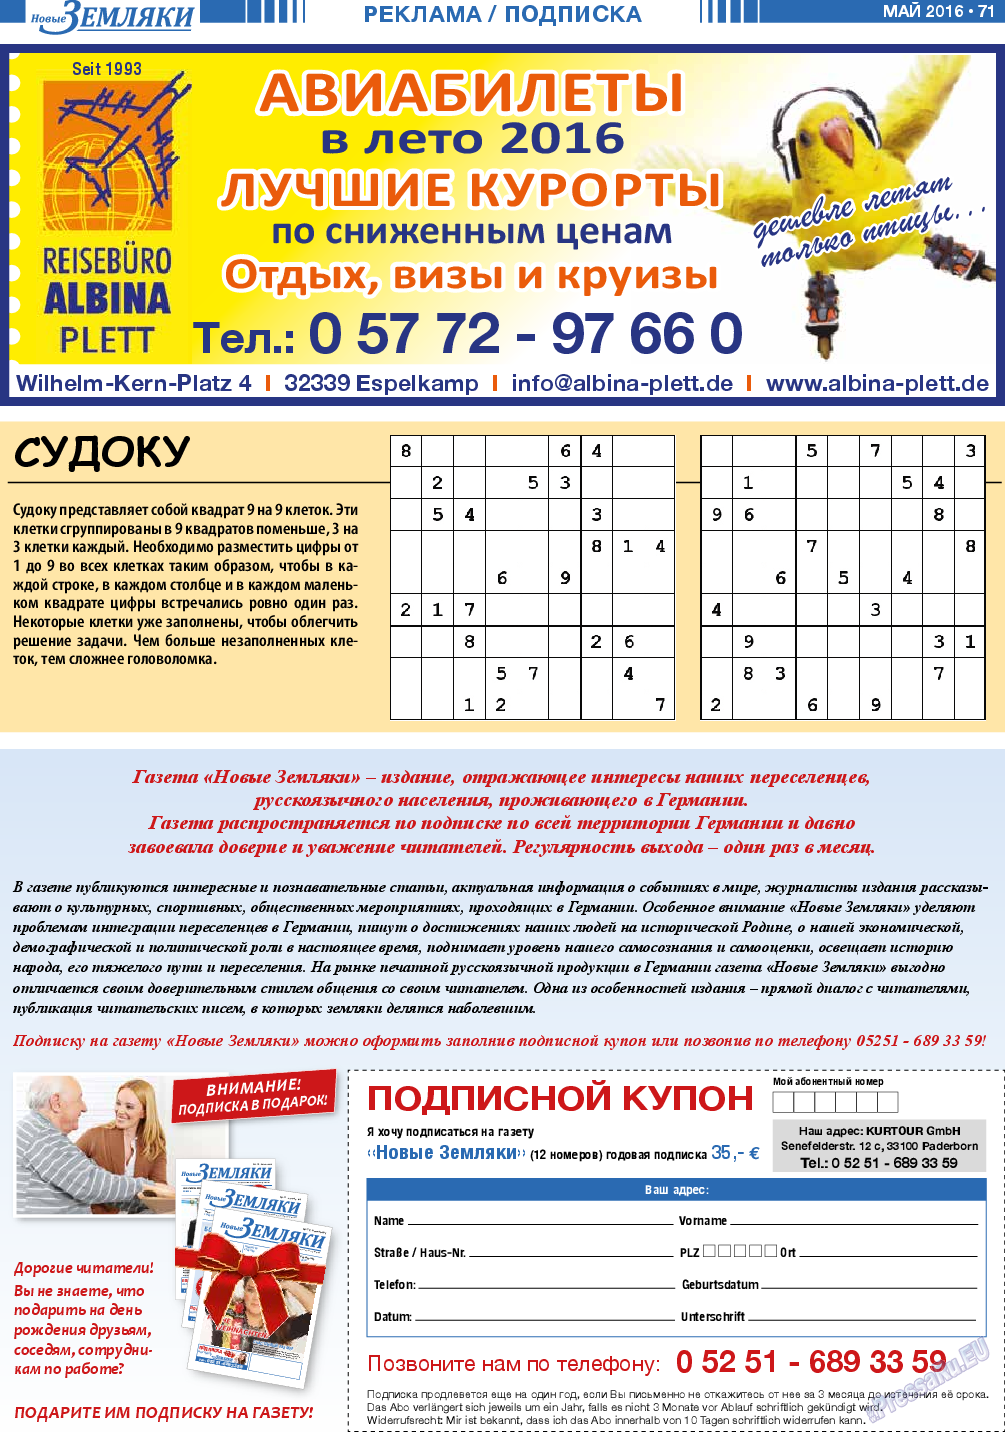 Новые Земляки, газета. 2016 №5 стр.71